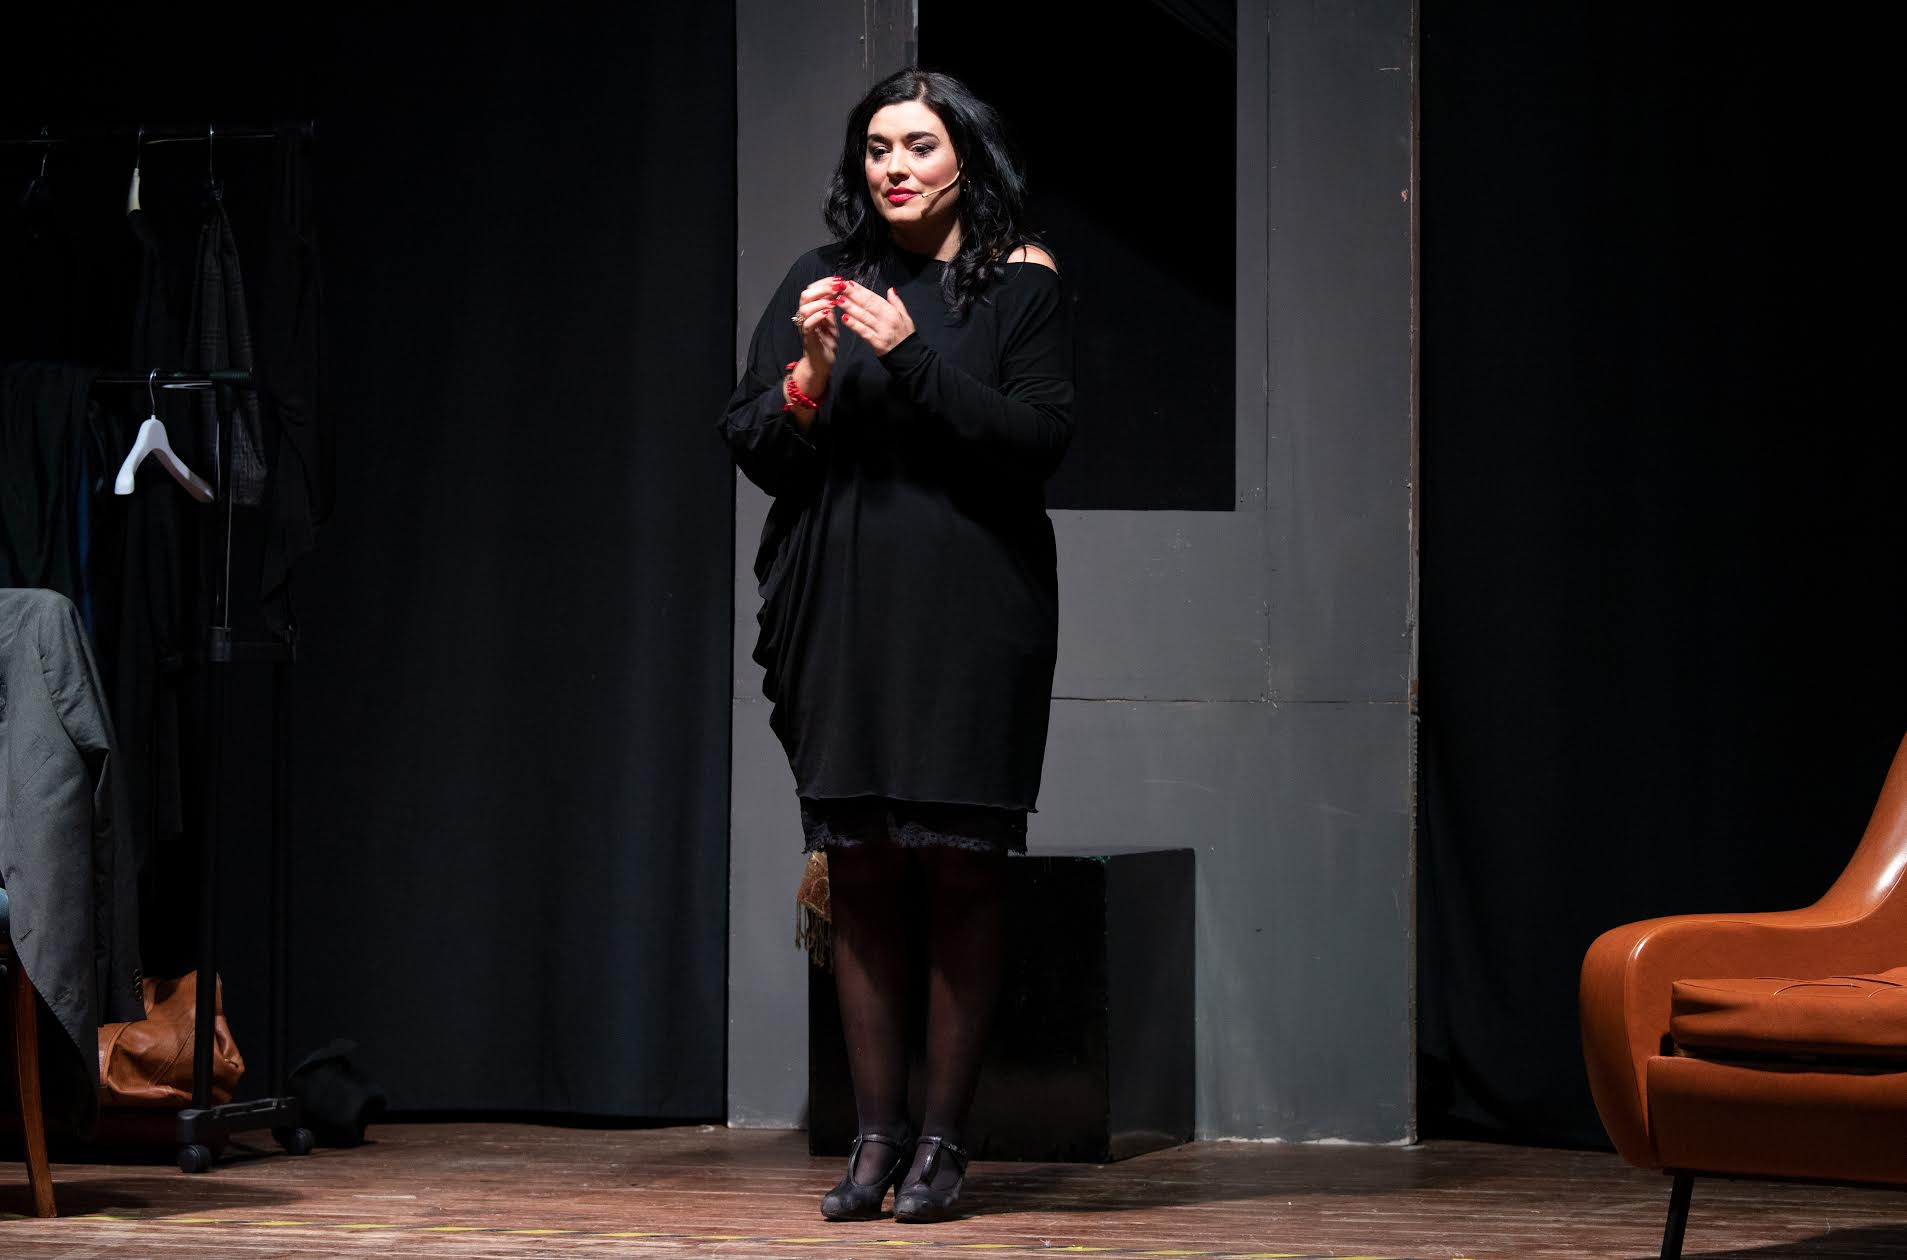 Spettacoli, applausi per Ester Botta al teatro Metropolitano